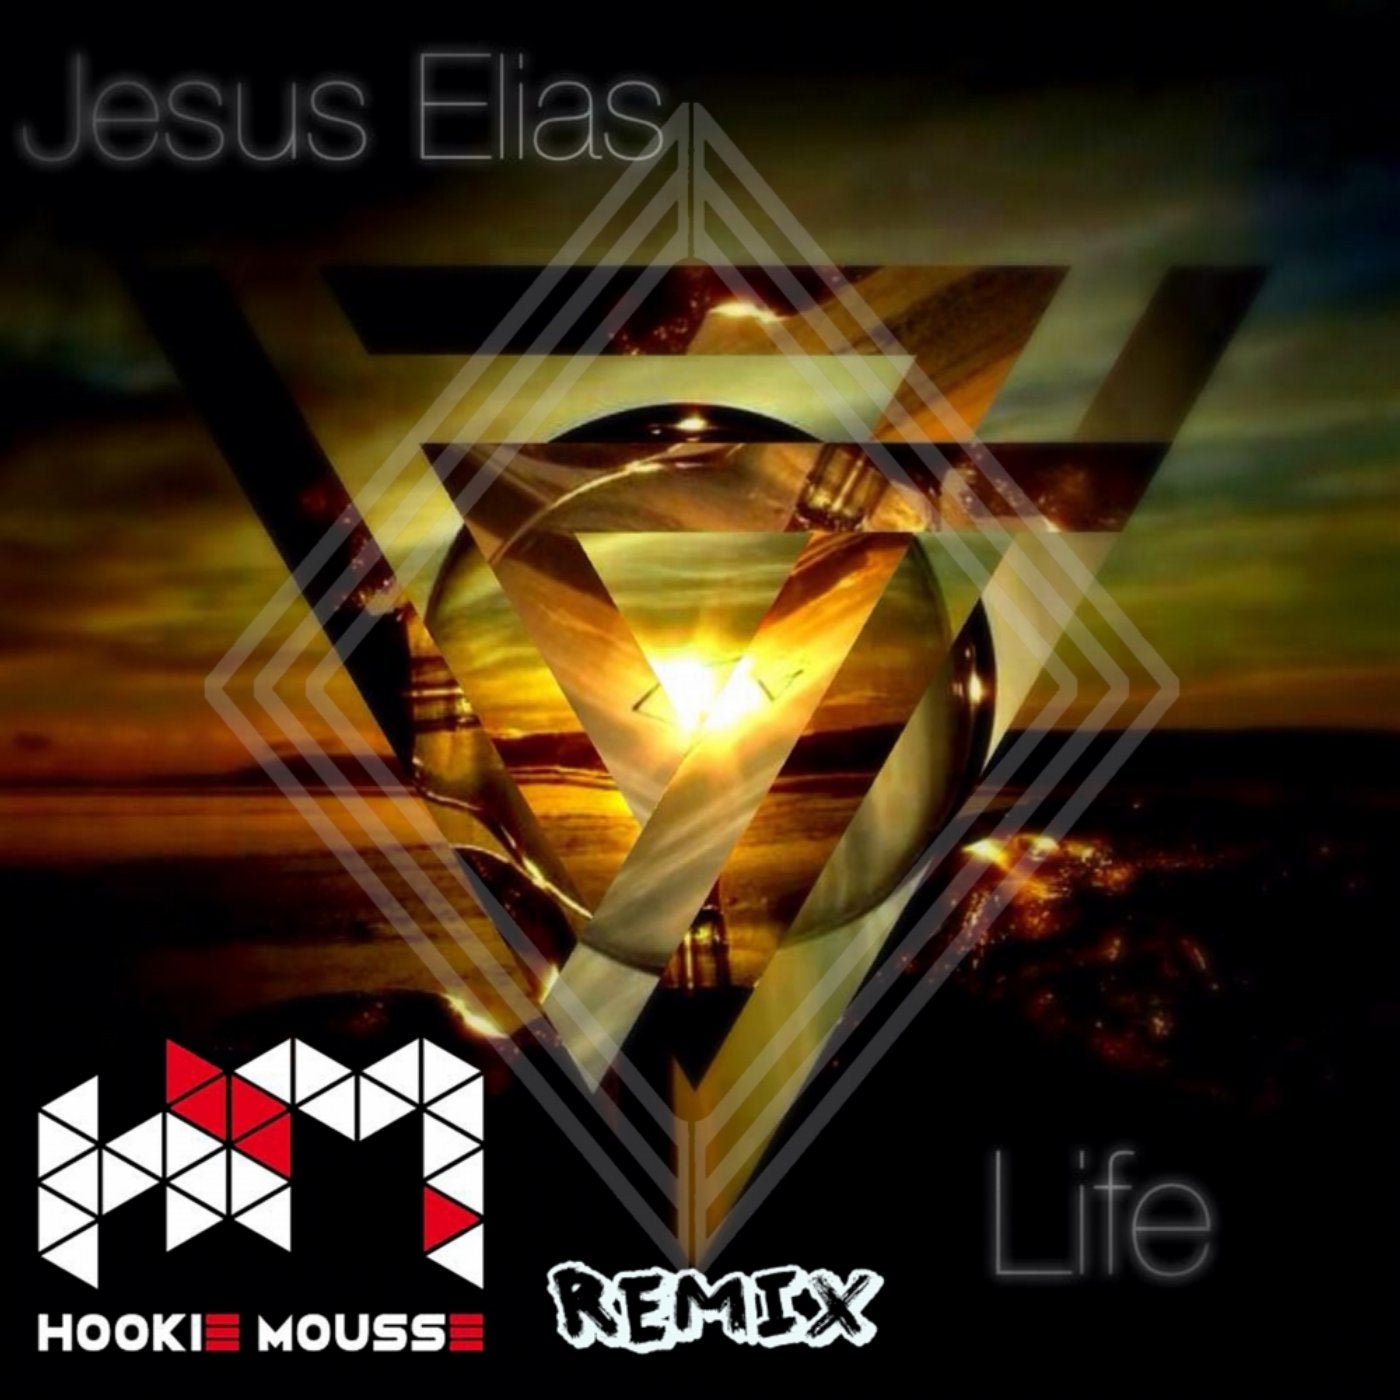 Life (Hookie Mousse Remix)